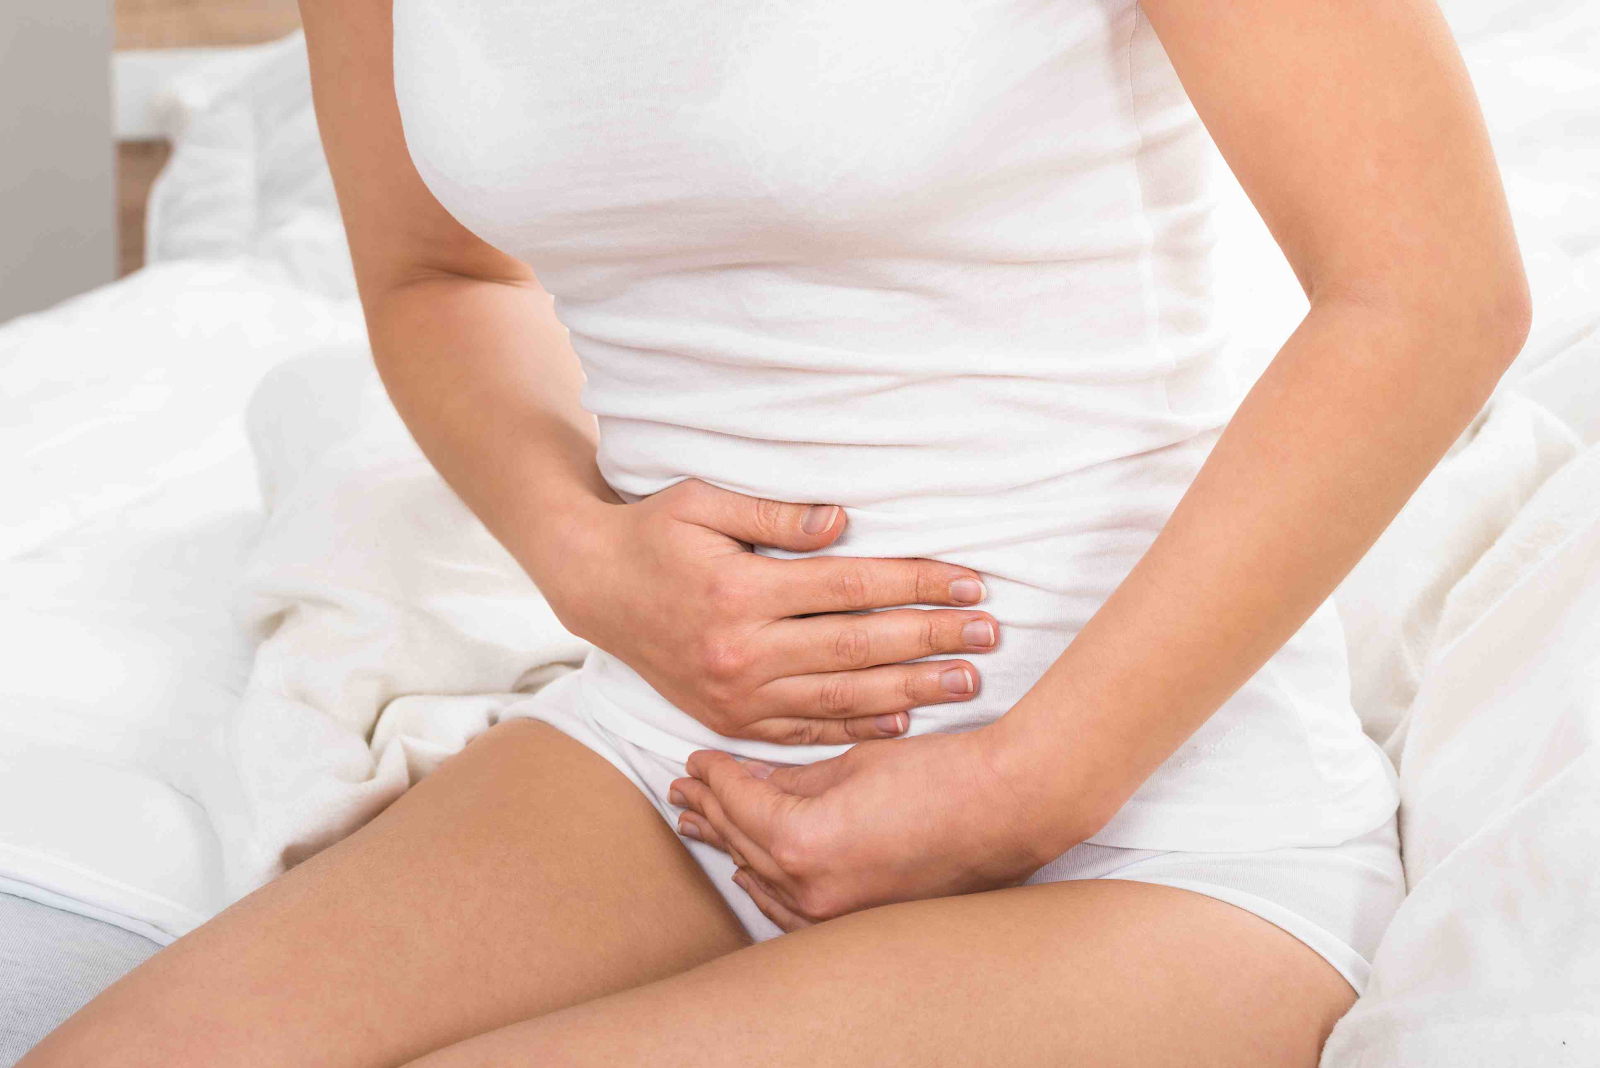 Bạn hãy chú ý tới các hiện tượng bất thường để phát hiện hở eo cổ tử cung sớm